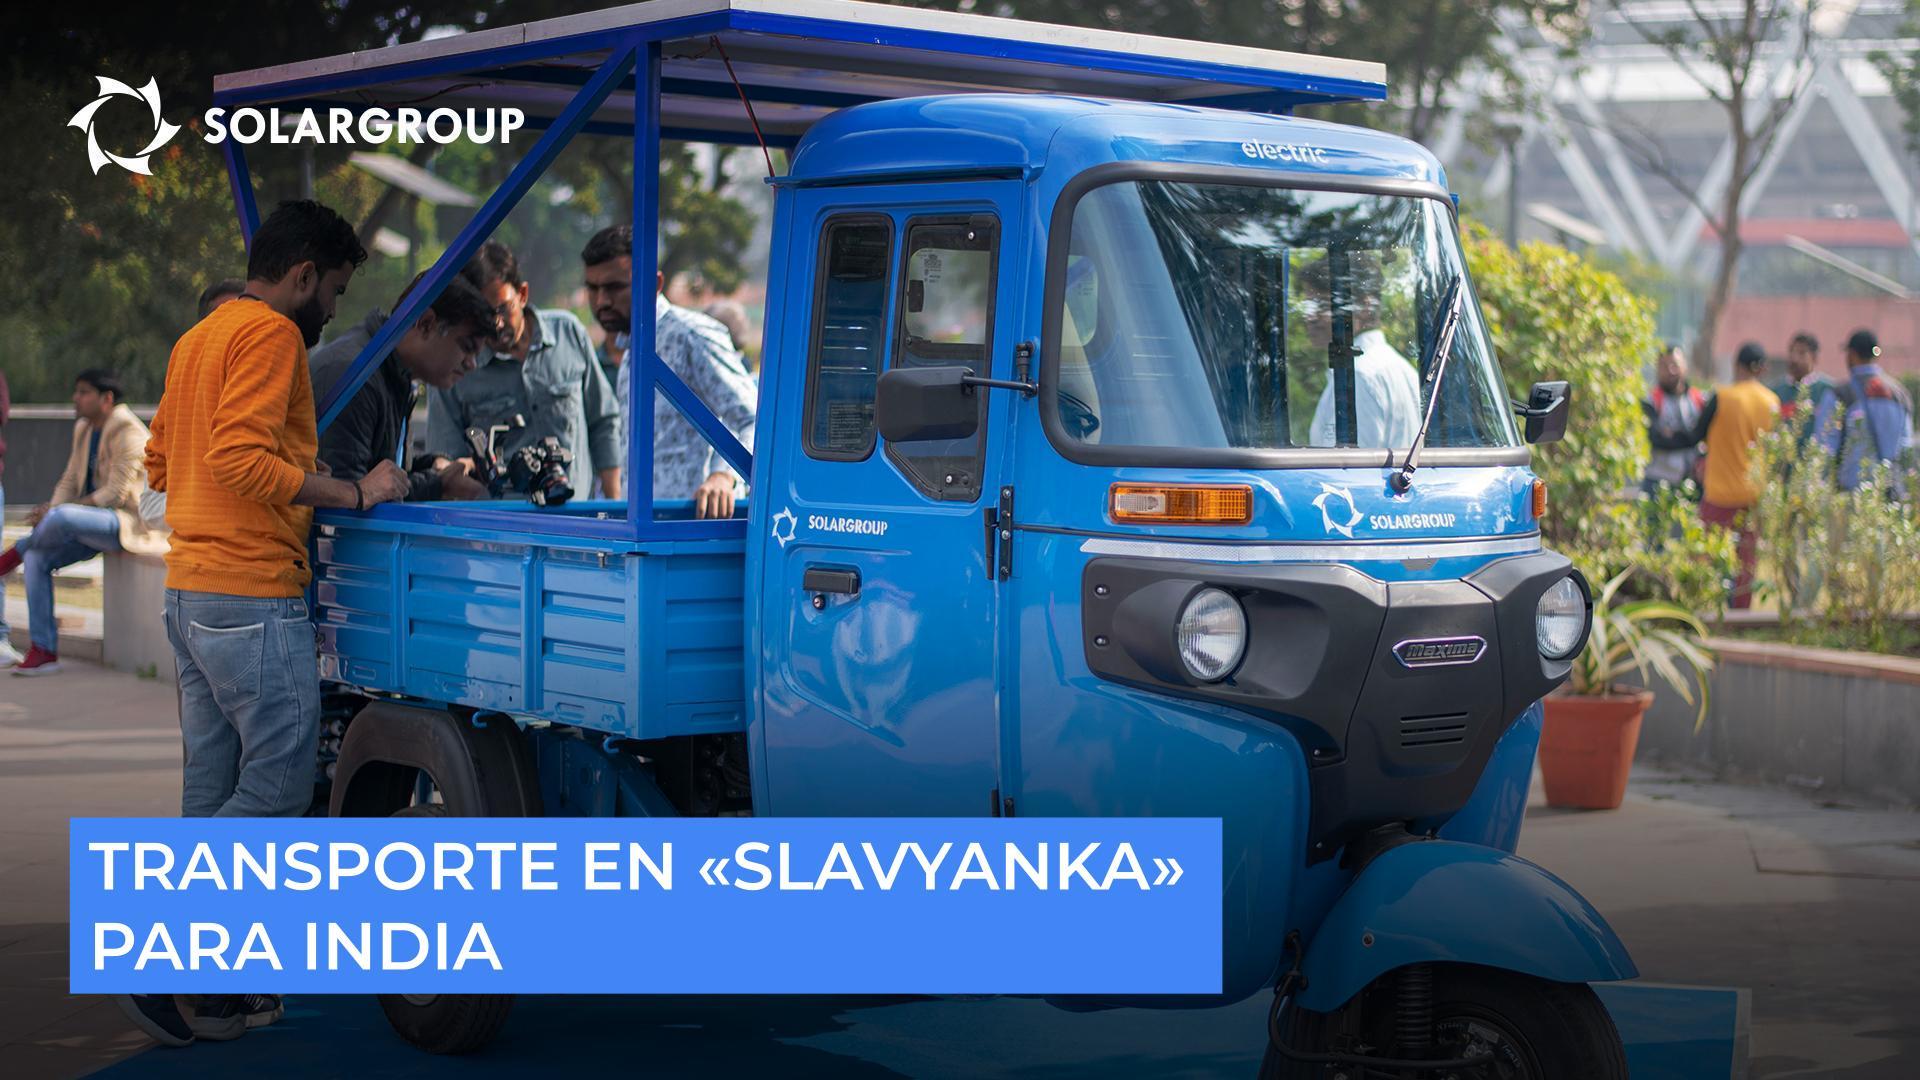 Transporte en "Slavyanka" para la India